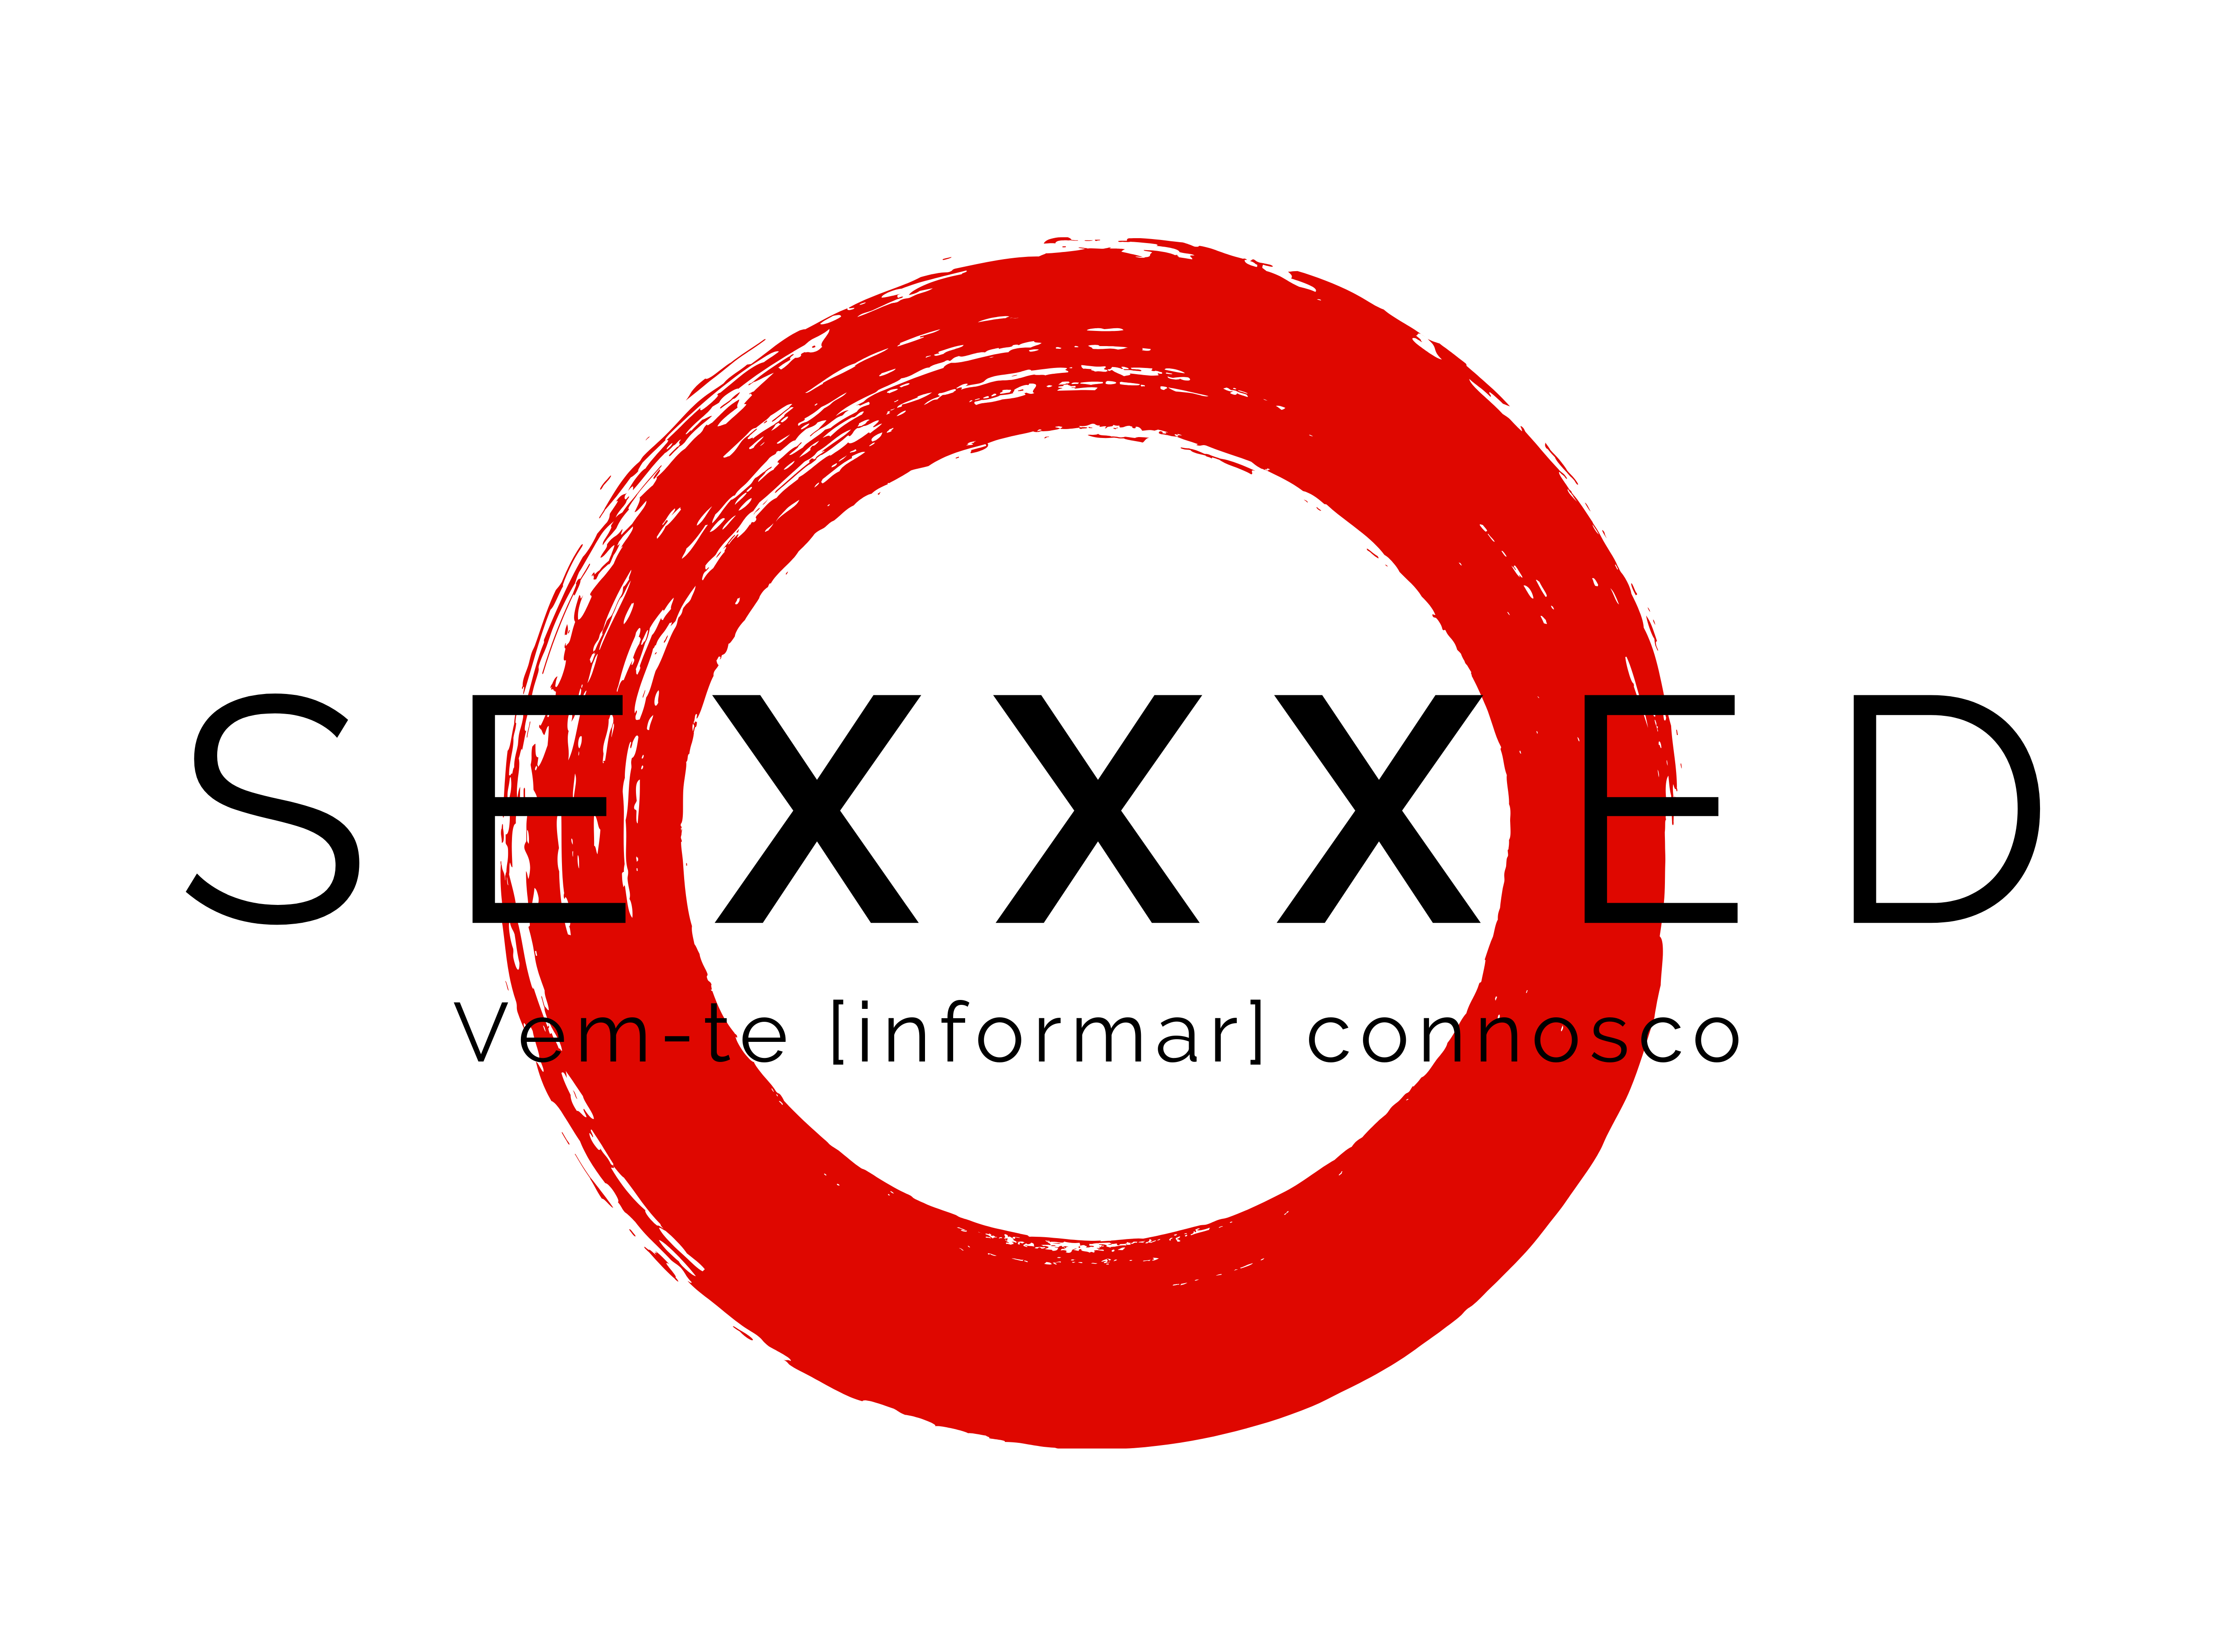 SexxxEd